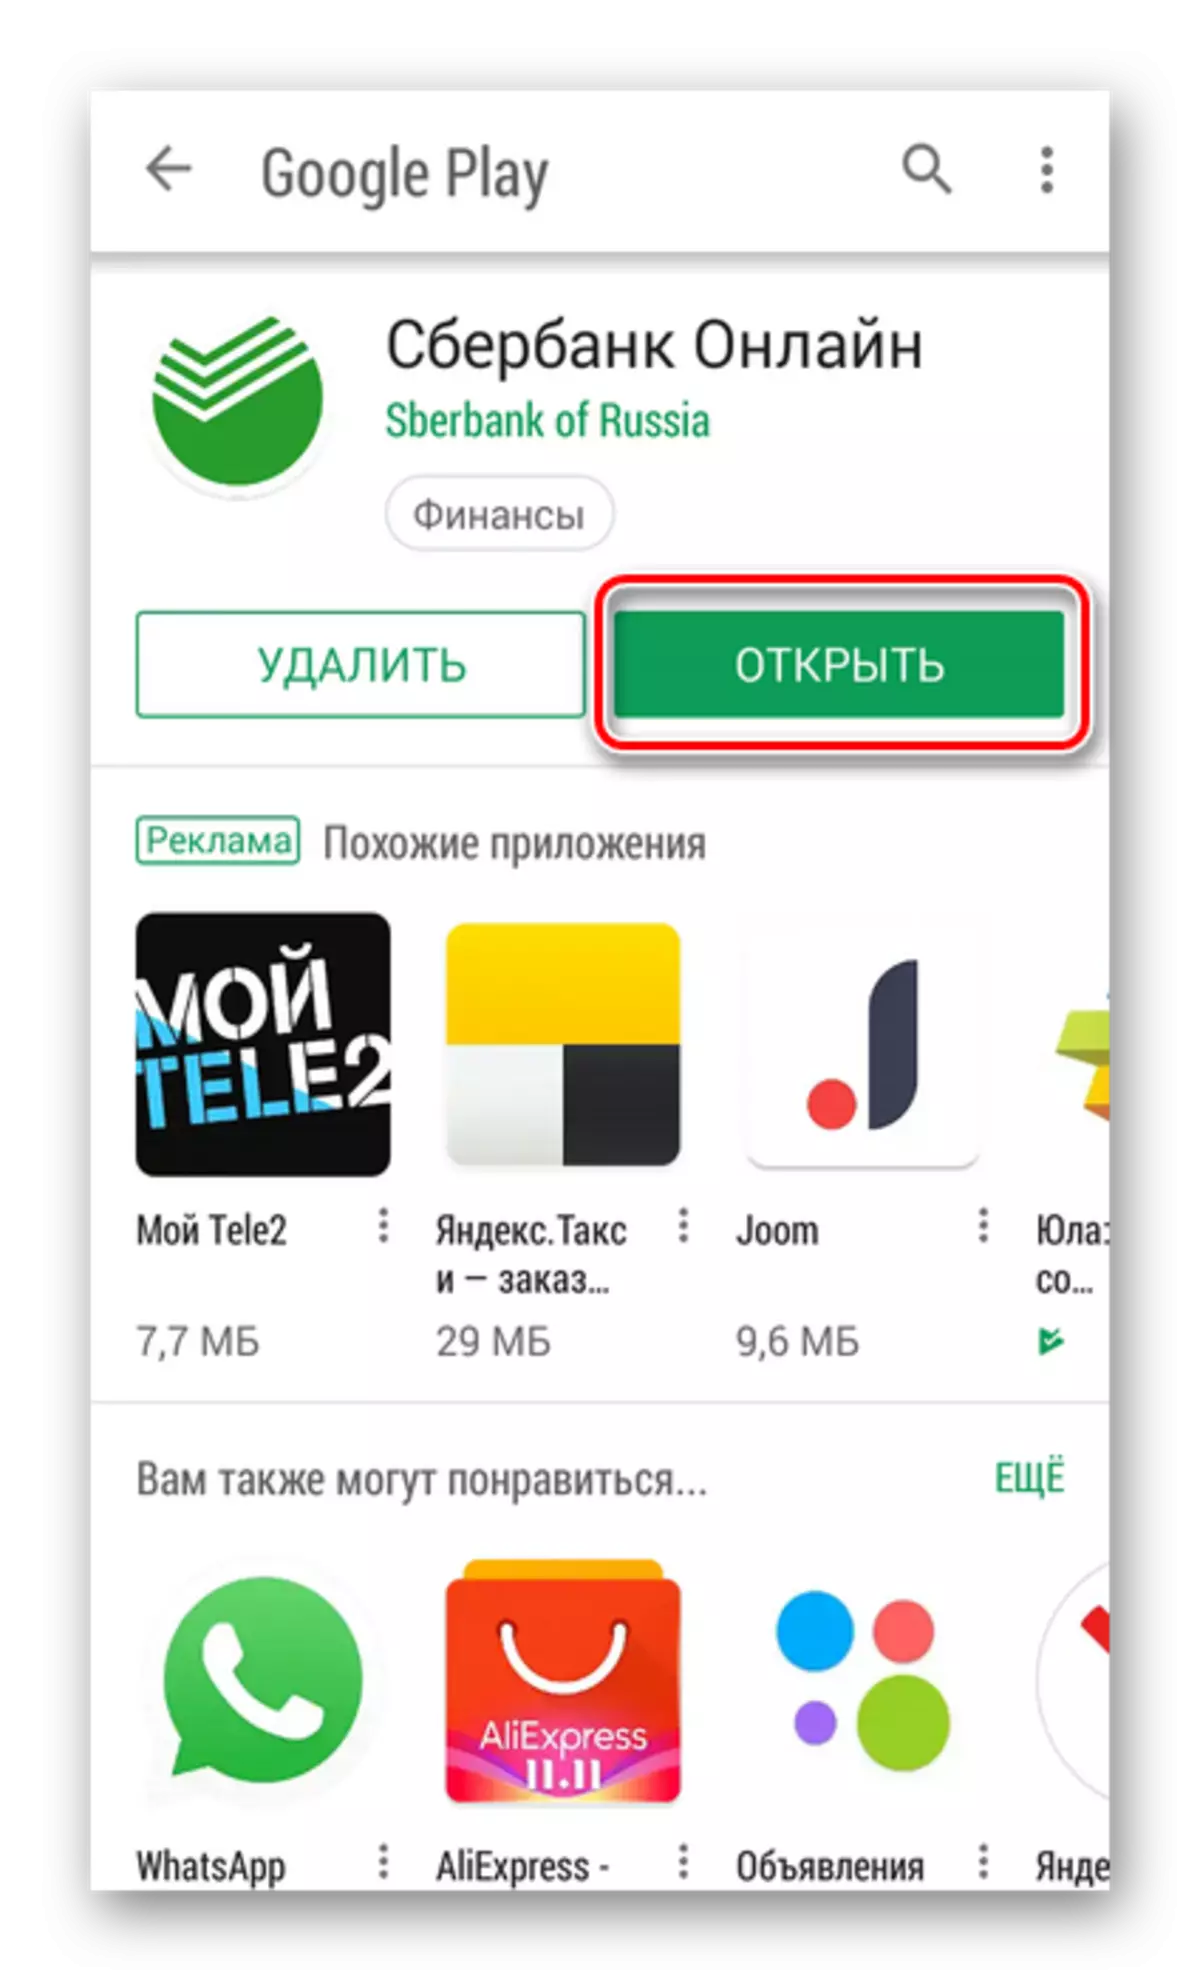 在線打開Sberbank應用程序